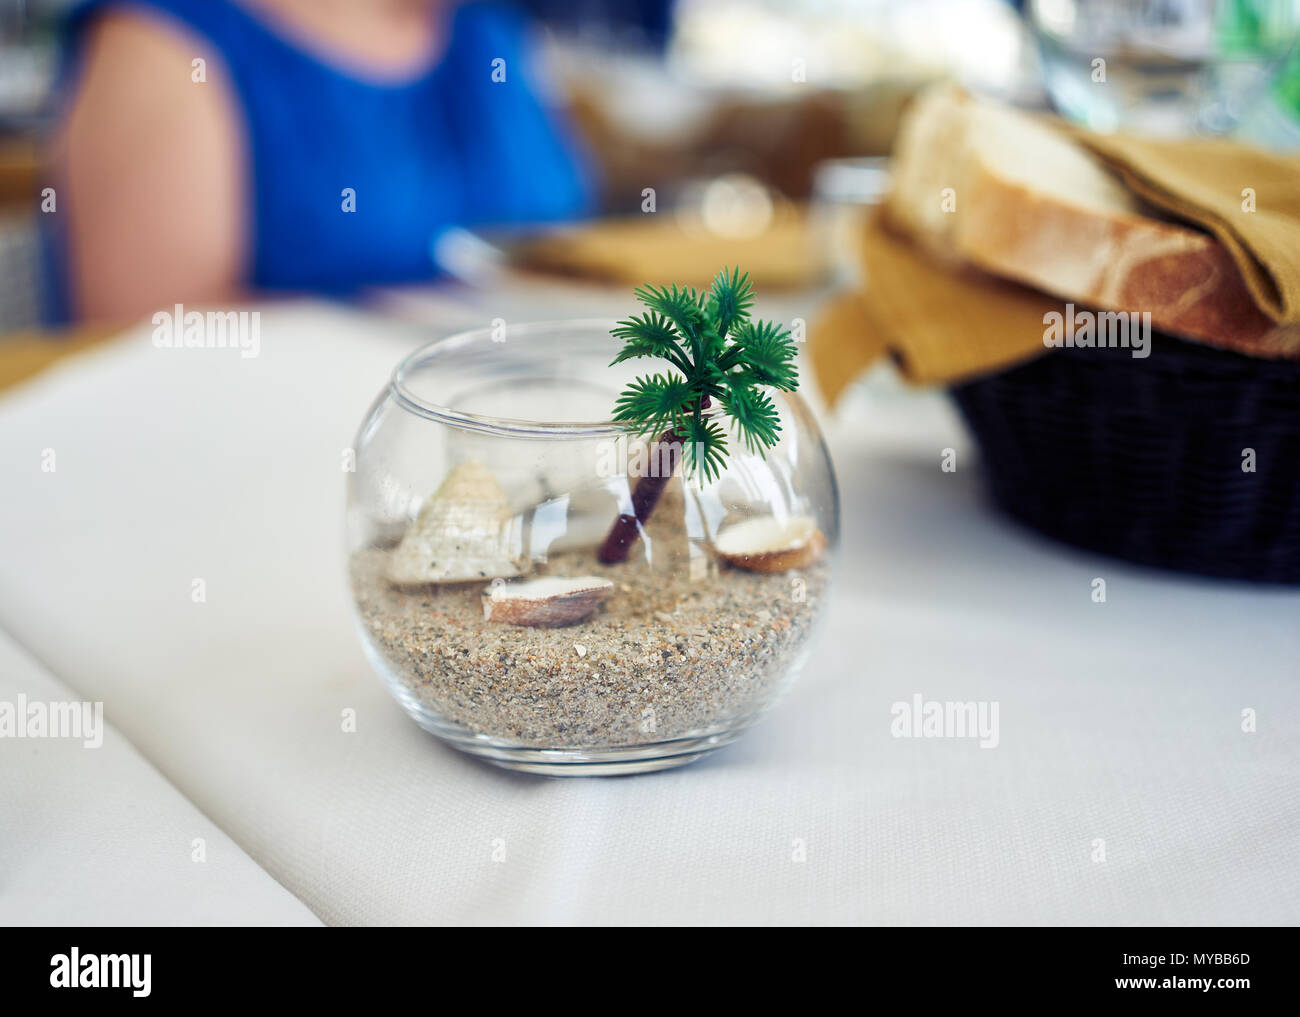 Vue rapprochée d'un bol en verre avec du sable Banque D'Images